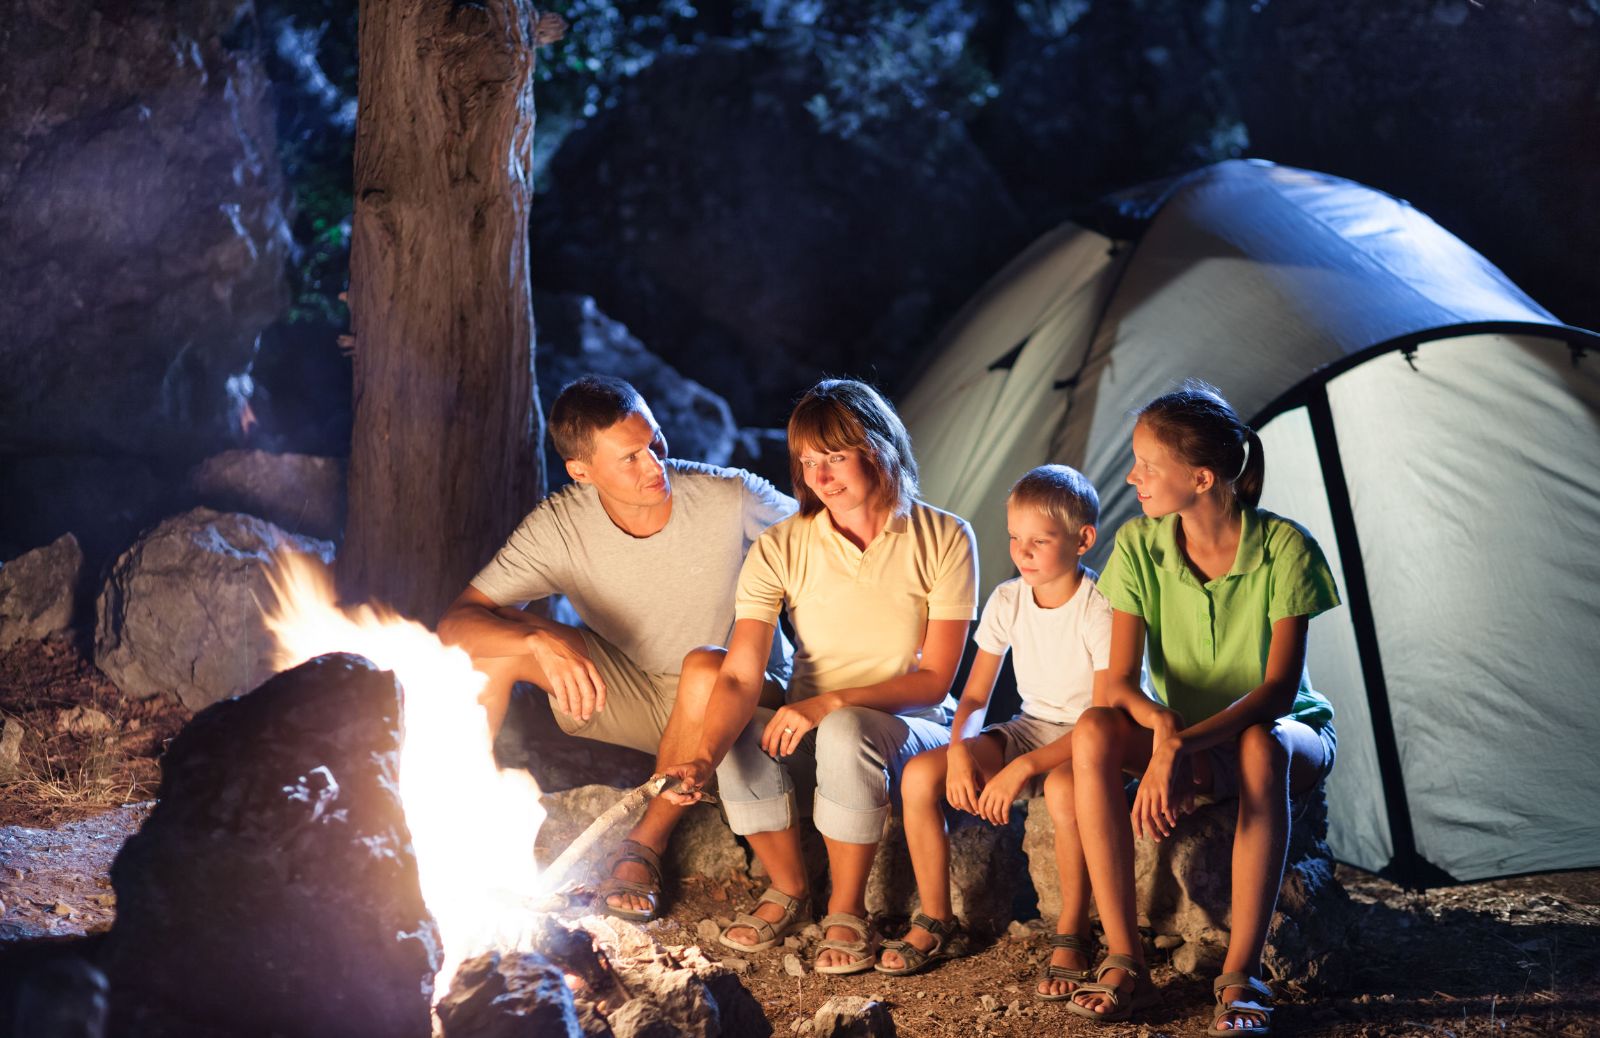 Camping come stile di vita: guida perfetta al campeggio 